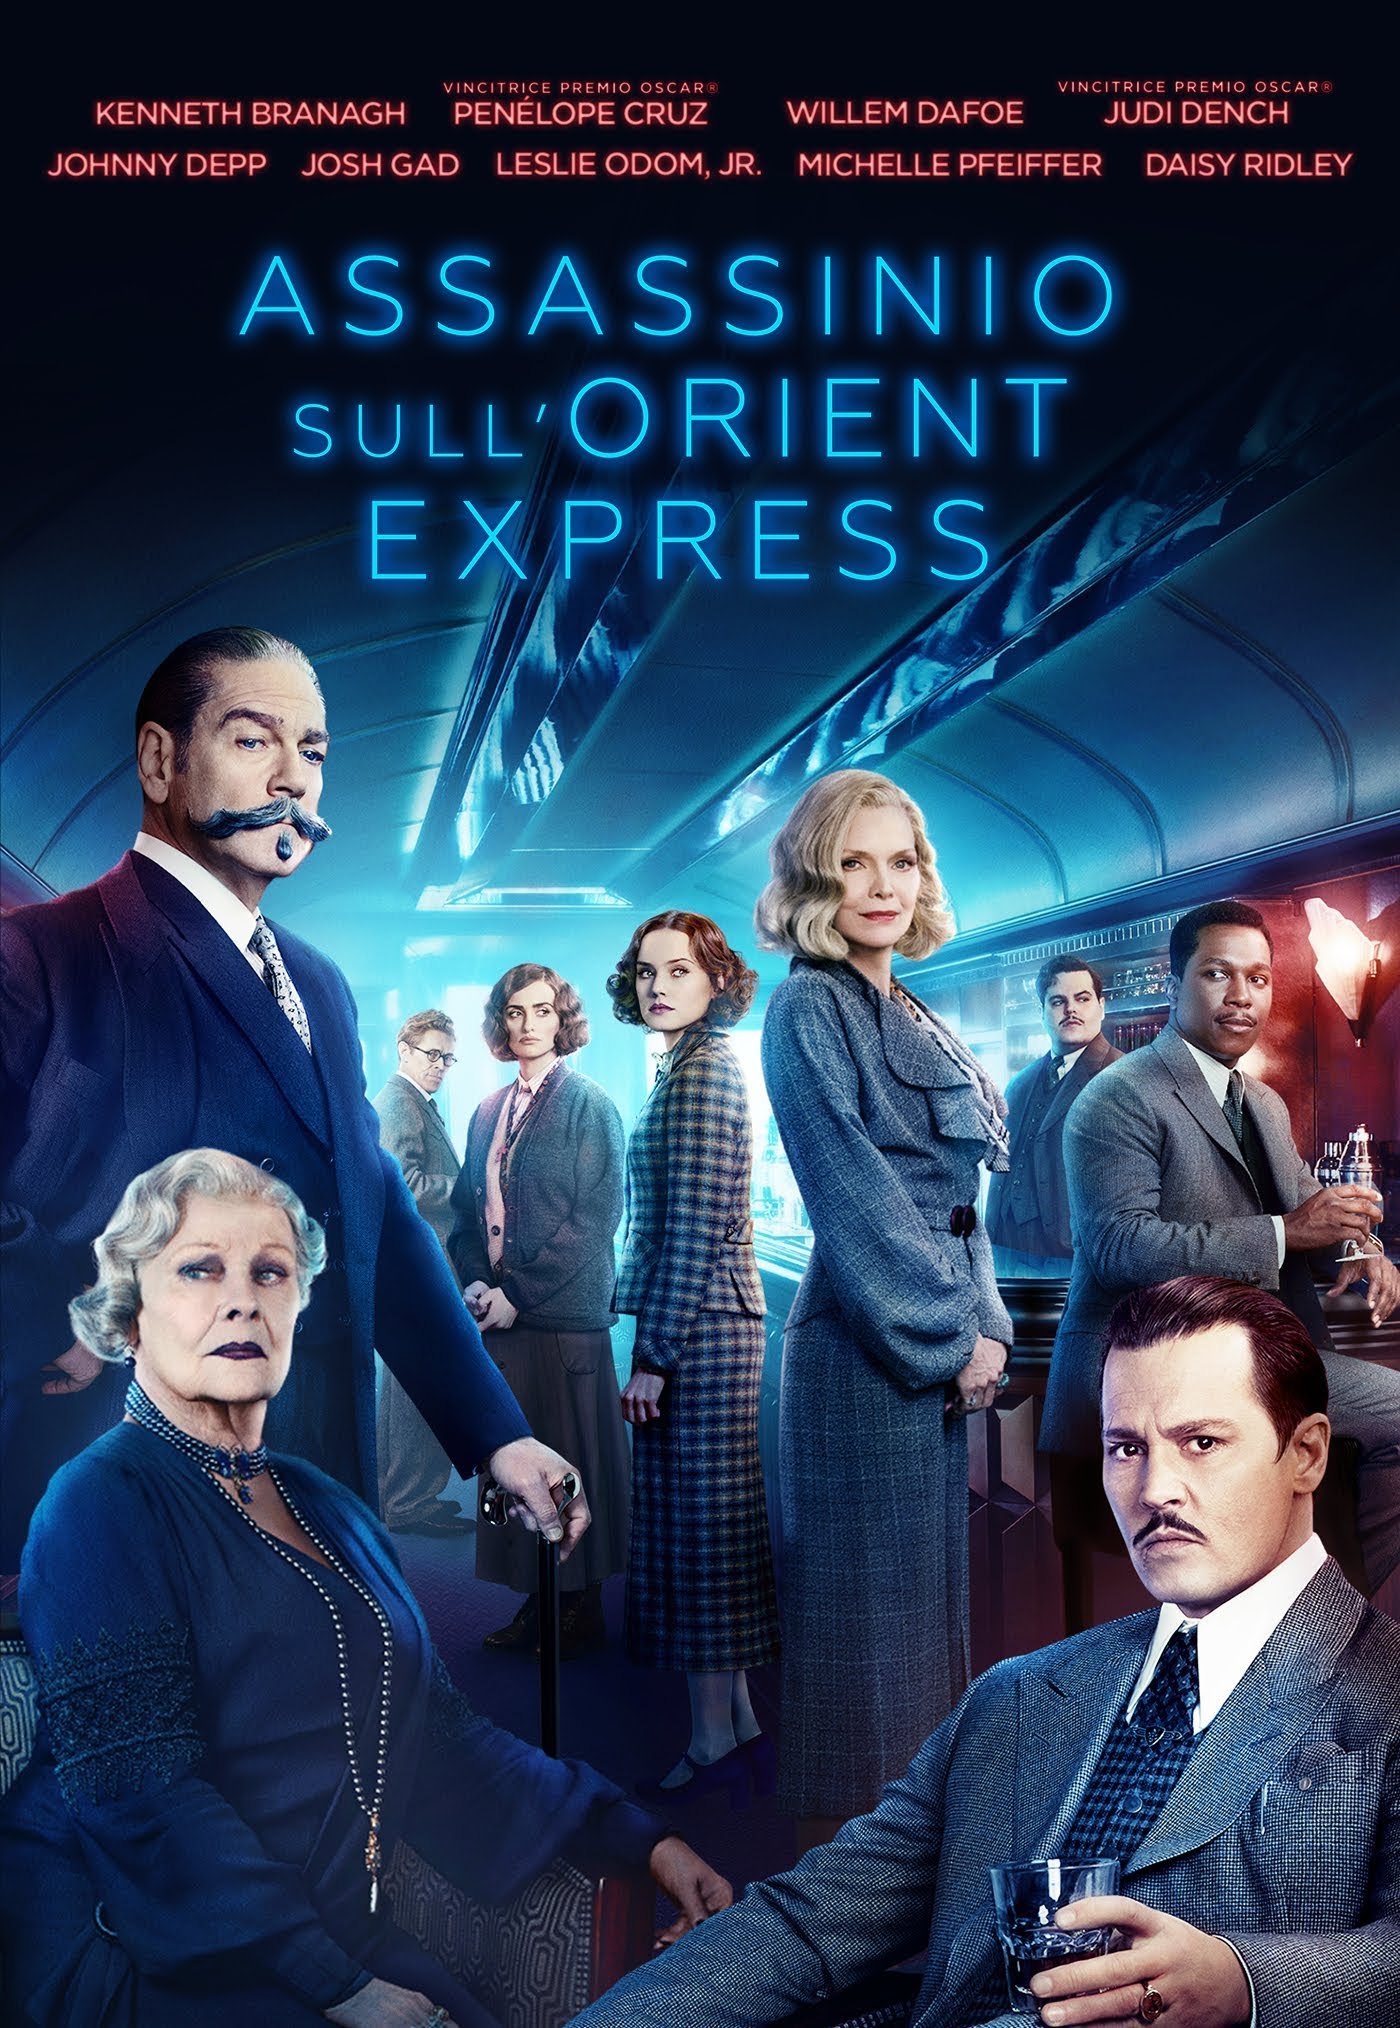 Assassinio sull’Orient Express [HD] (2017)